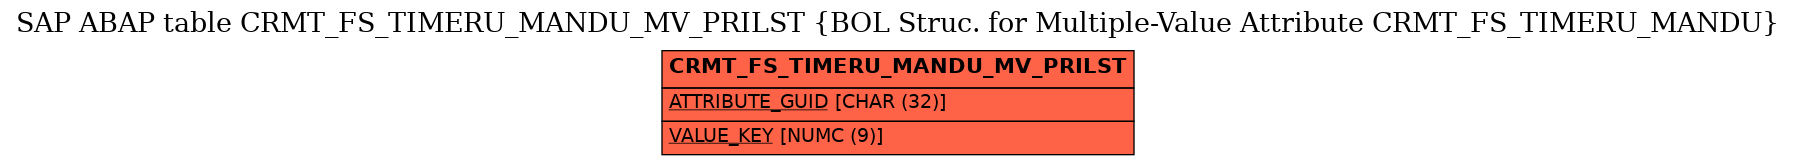 E-R Diagram for table CRMT_FS_TIMERU_MANDU_MV_PRILST (BOL Struc. for Multiple-Value Attribute CRMT_FS_TIMERU_MANDU)